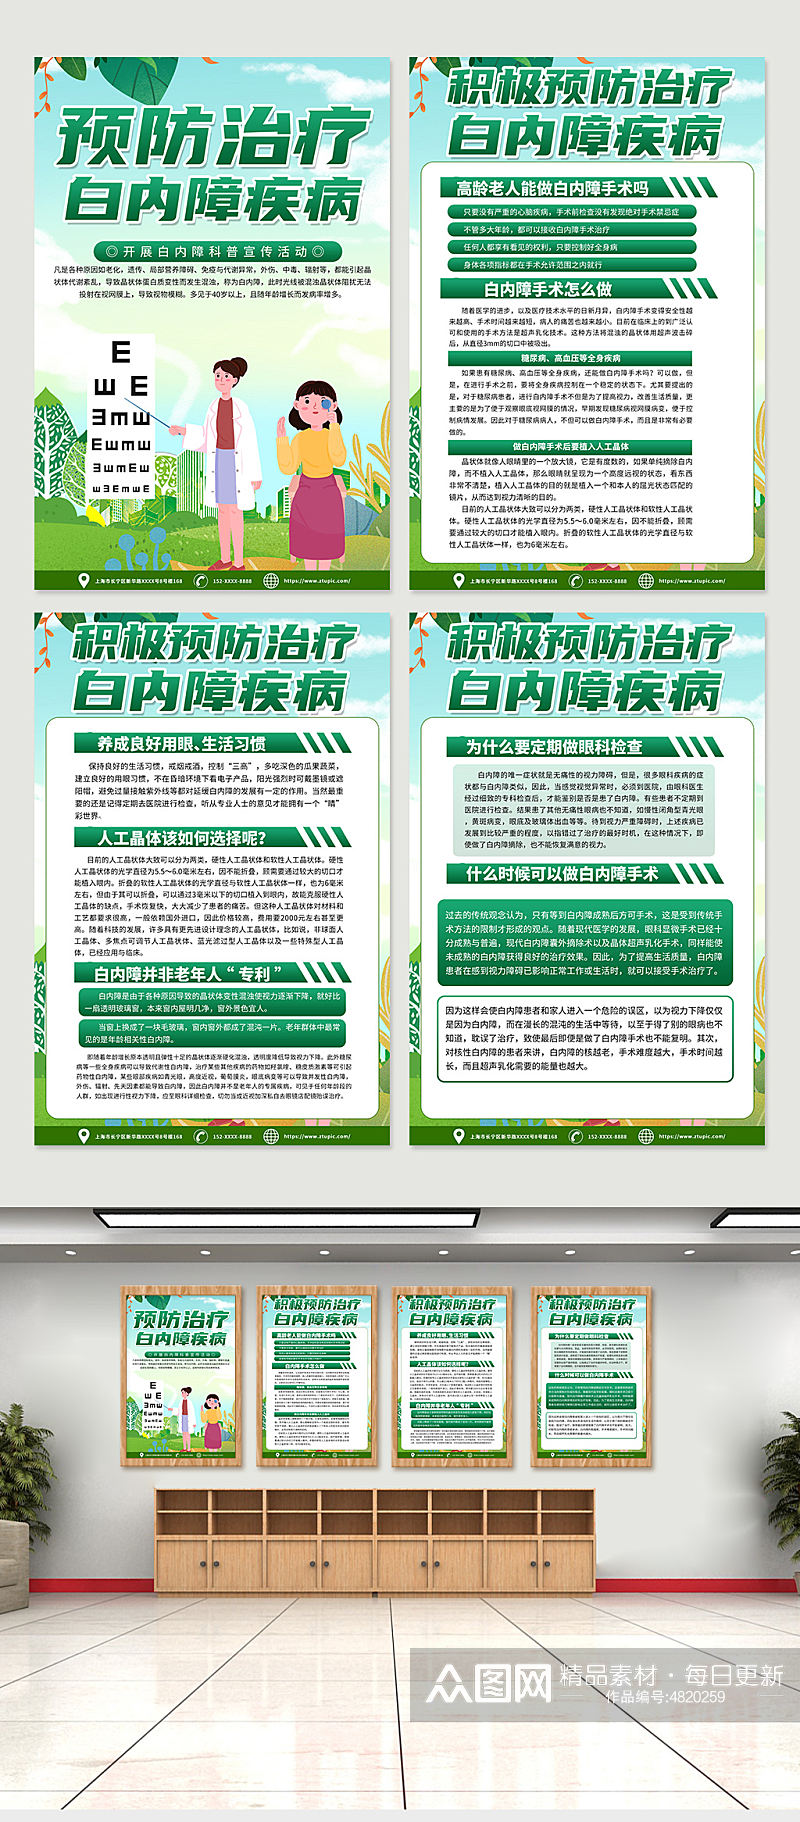 绿色预防白内障治疗知识宣传海报素材